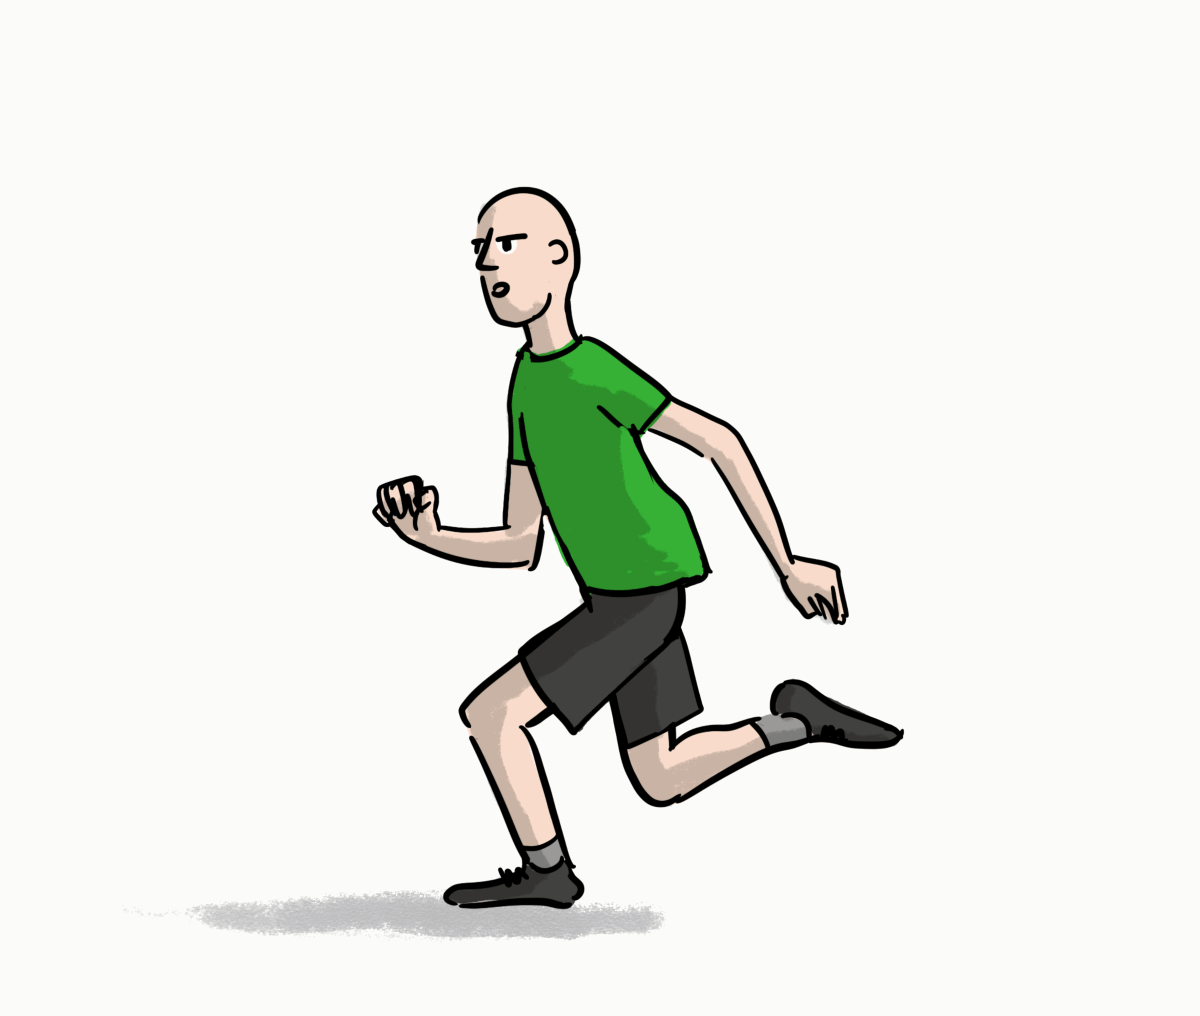 Bryan Running